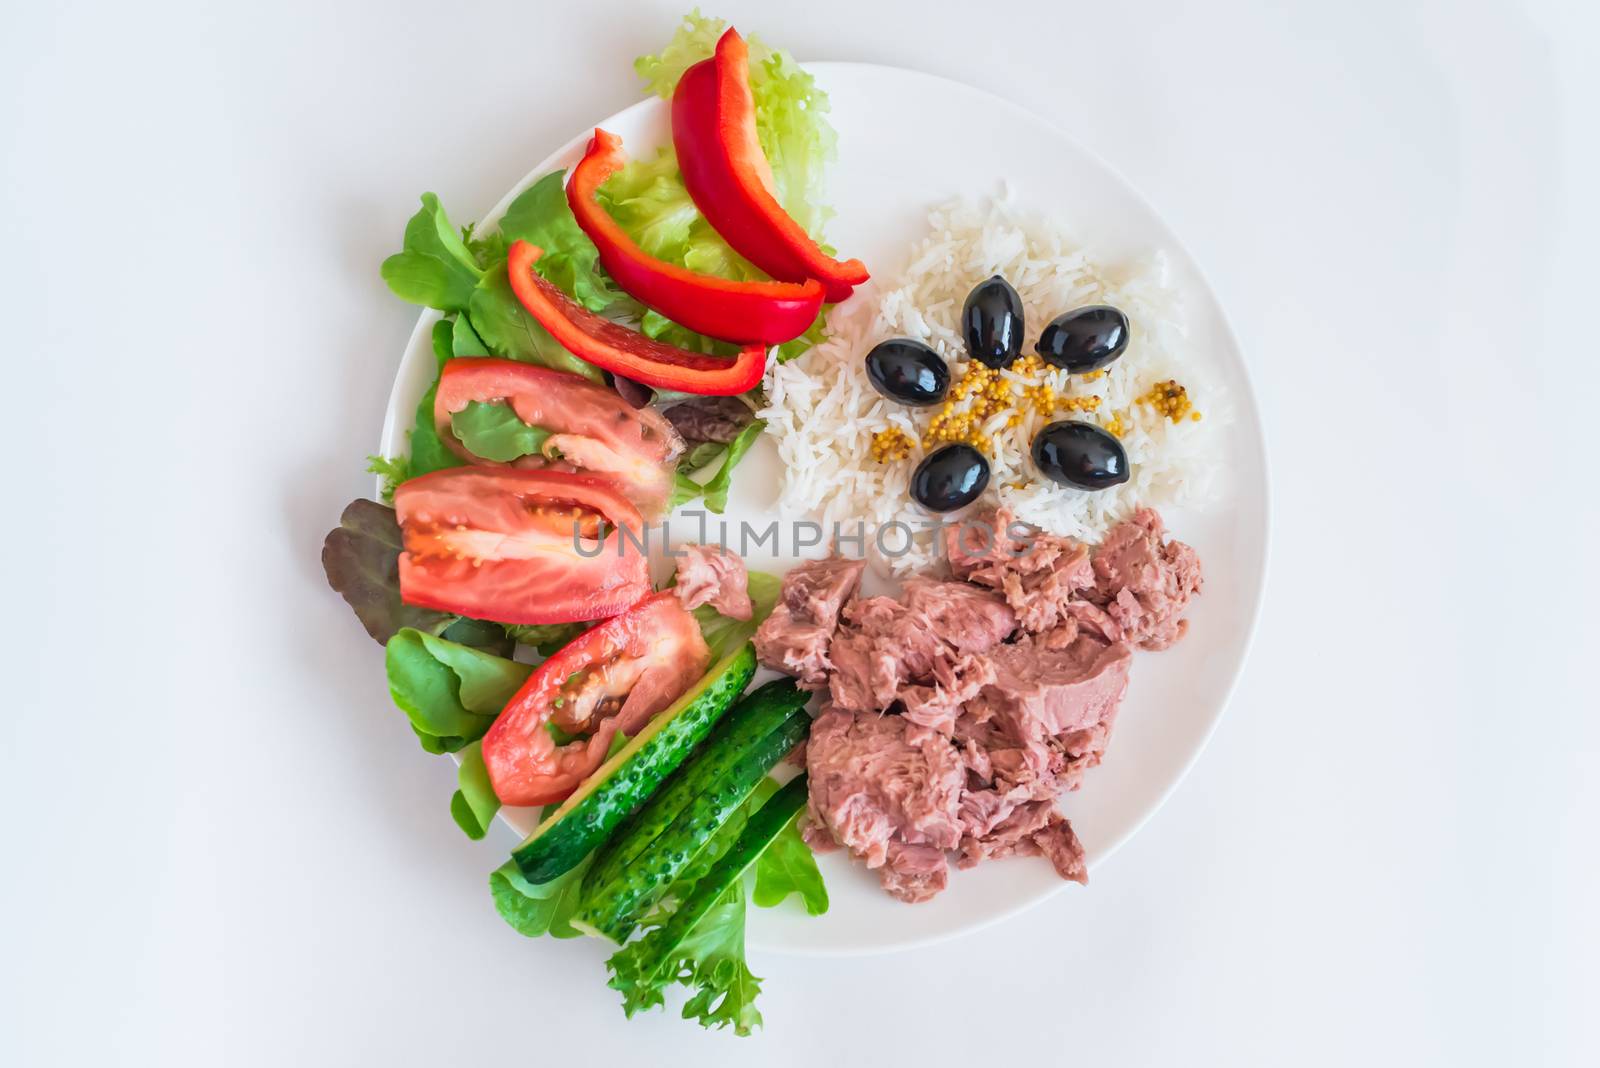 rice, tuna chopped vegetables, olives by okskukuruza